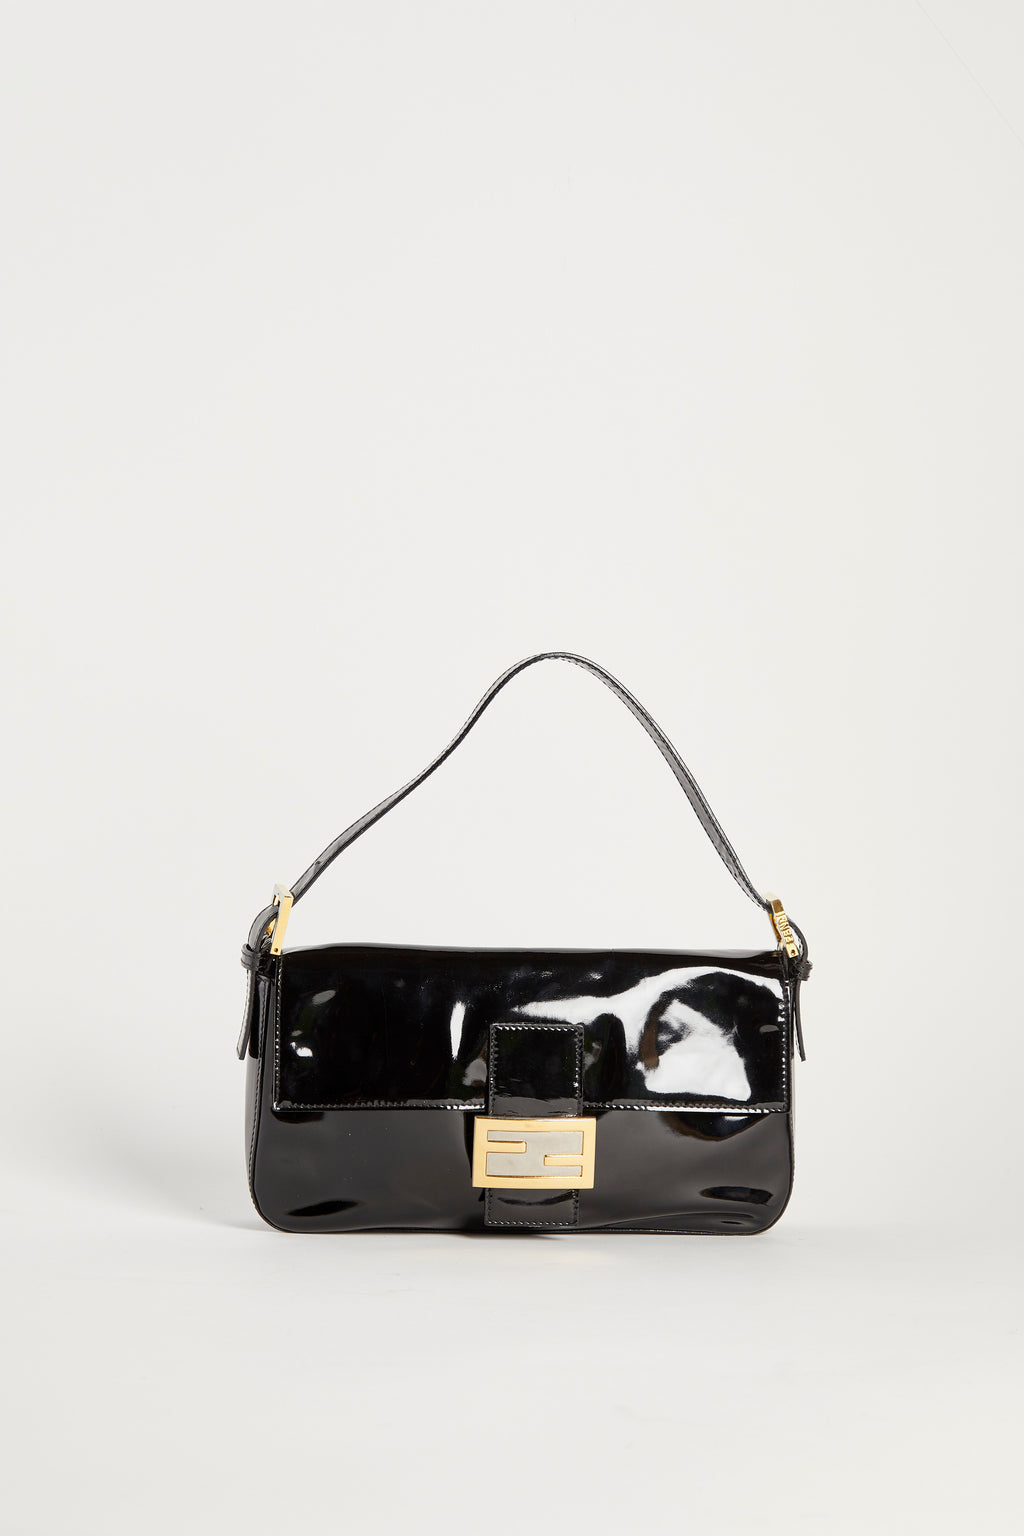 Vintage Fendi Black Patent Leather Baguette Shoulder Bag